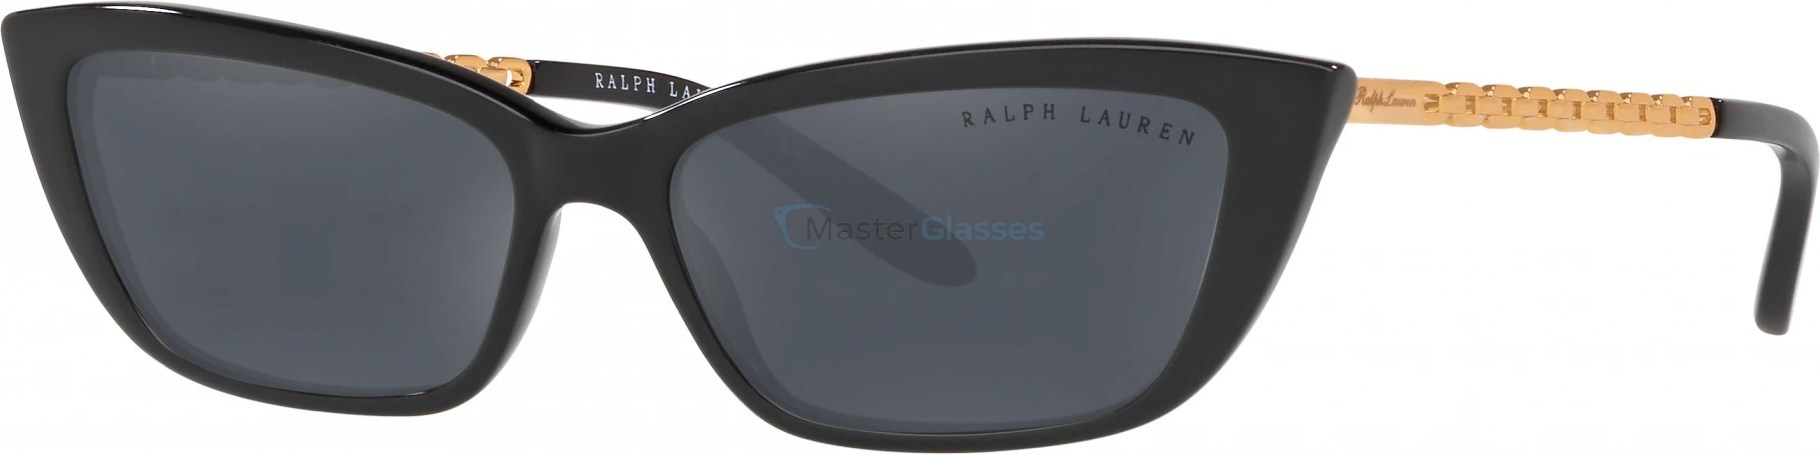   Ralph lauren RL8173 50016G Black